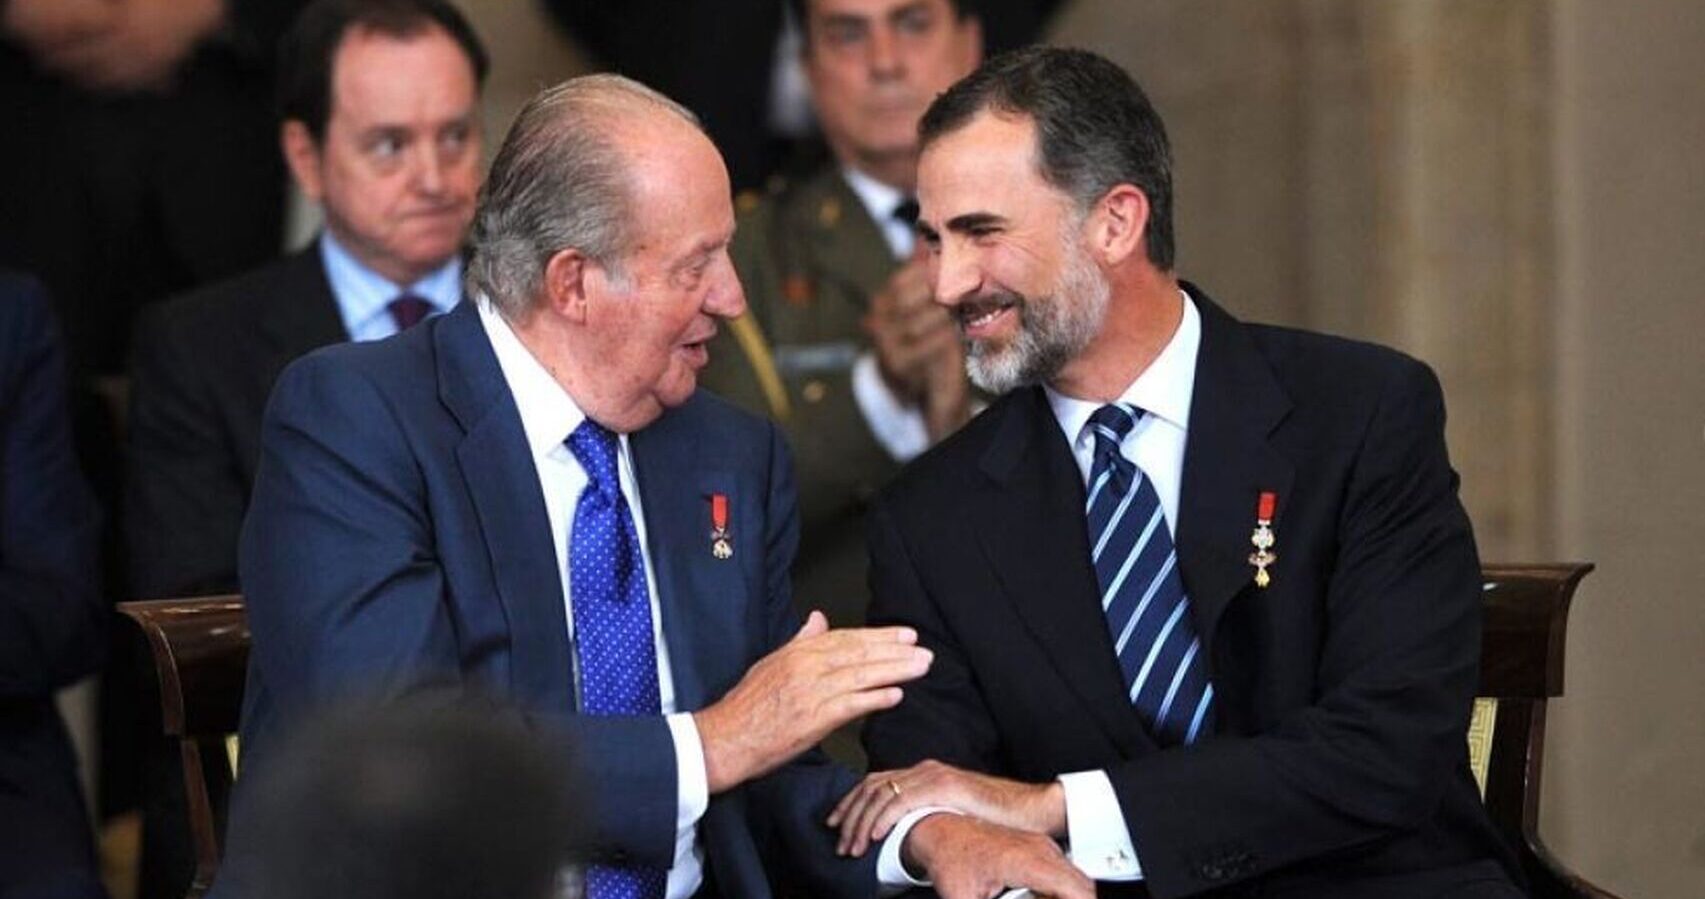 A l'esquerra Joan Carles I, a la dreta Felip VI